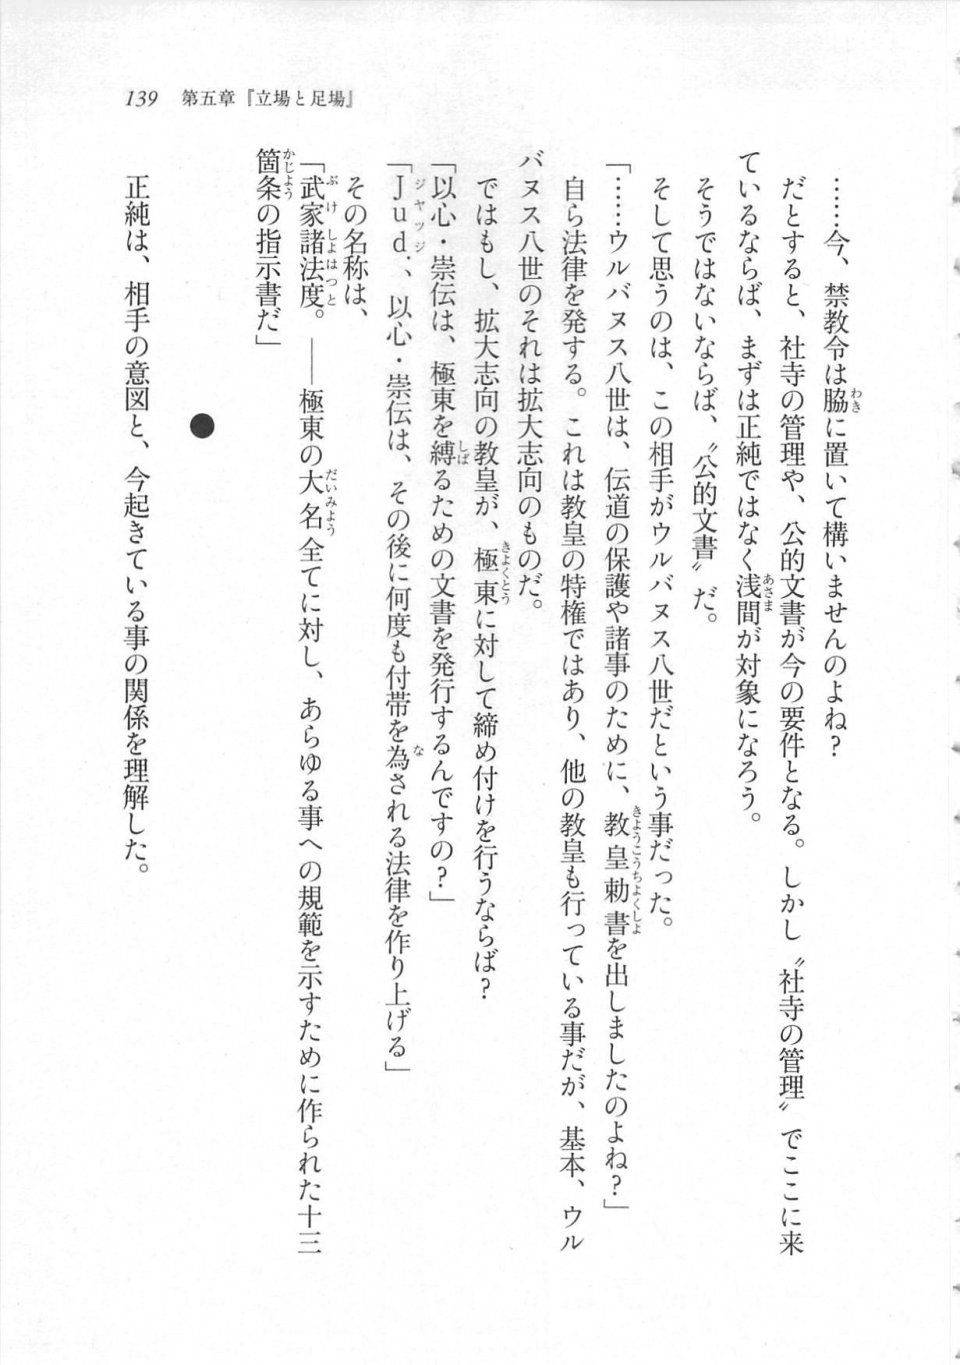 Kyoukai Senjou no Horizon LN Sidestory Vol 3 - Photo #143